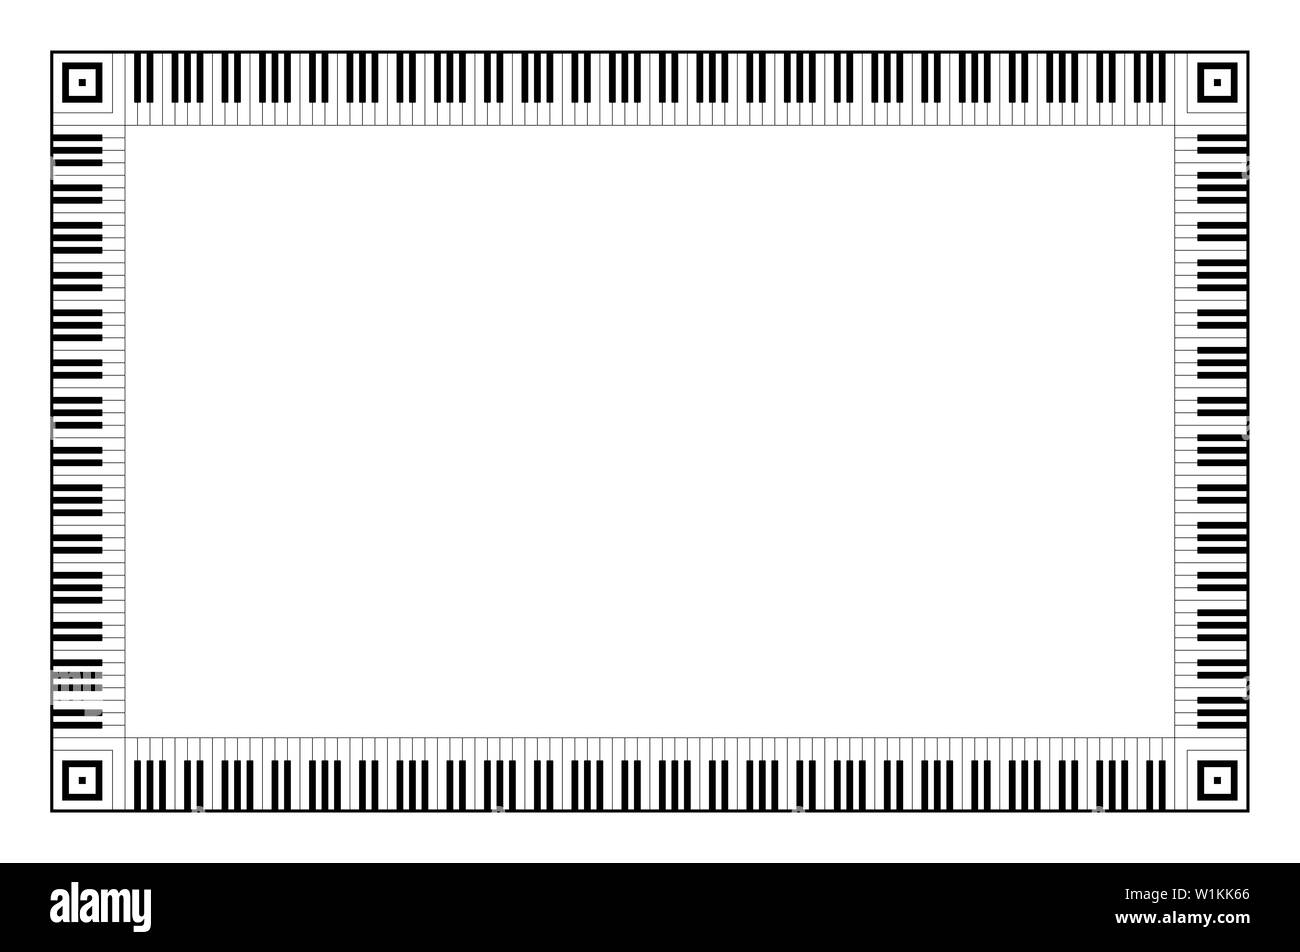 Teclado musical marco rectangular, hecho de patrones de octava conectado. Borde decorativo, construido a partir de octavas, en blanco y negro piano Teclas del teclado. Foto de stock